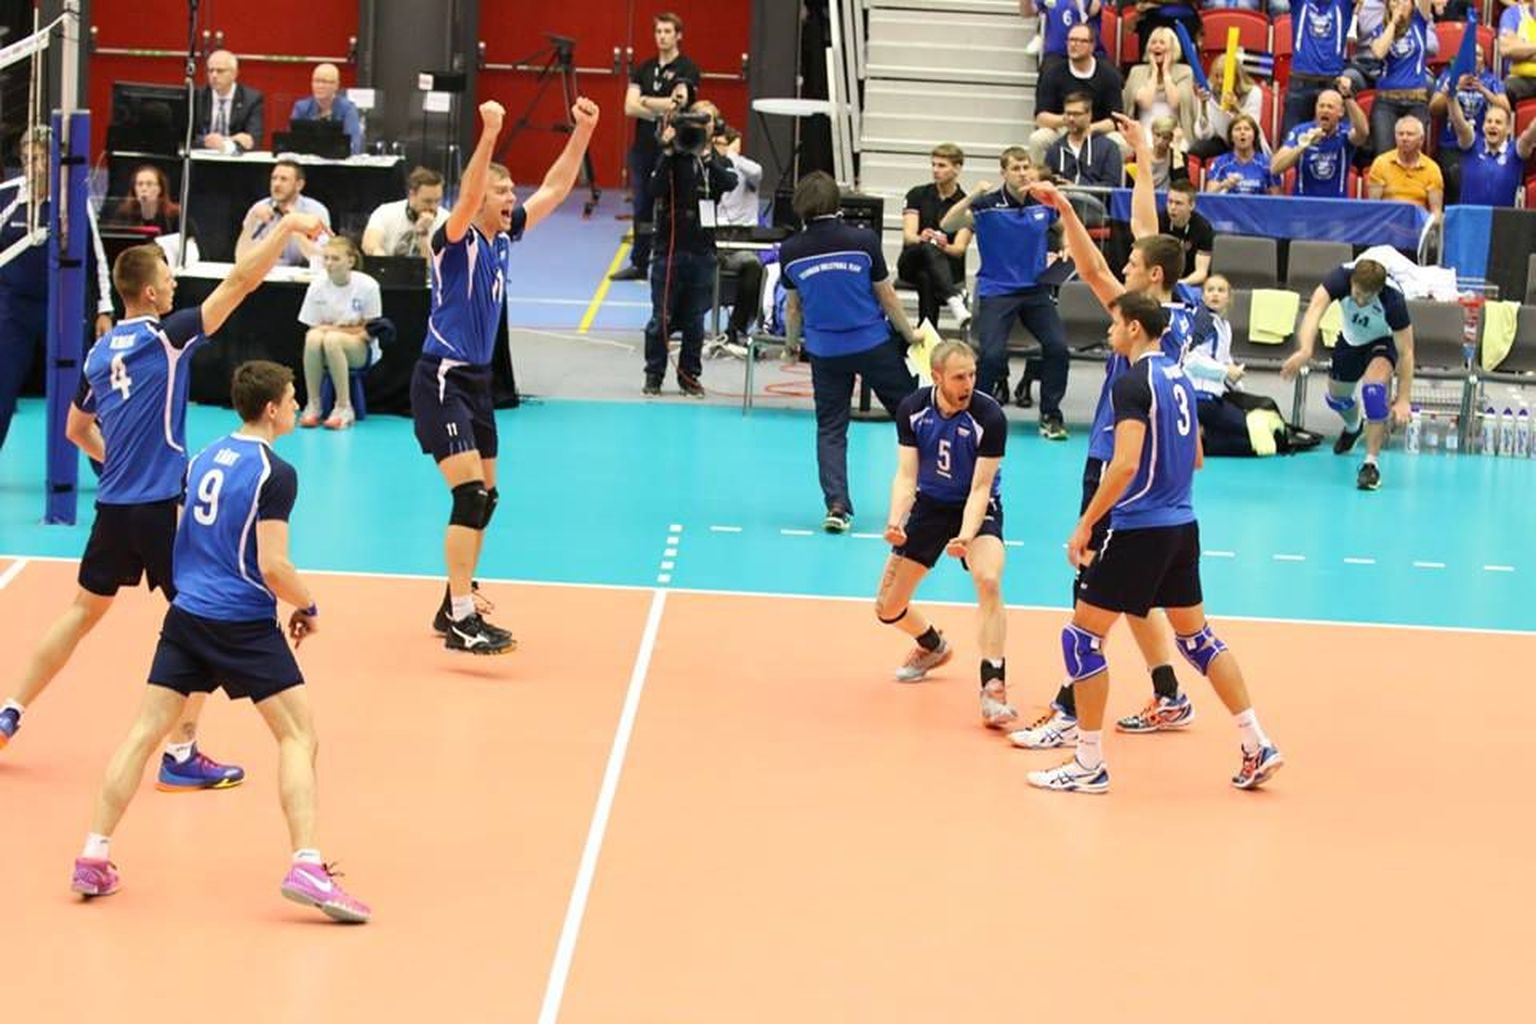 Eesti sai ka kordusmängus Rootsist jagu ja tagas pääsme Euroopa 16 parema meeskonna osalusel peetavale finaalturniirile.